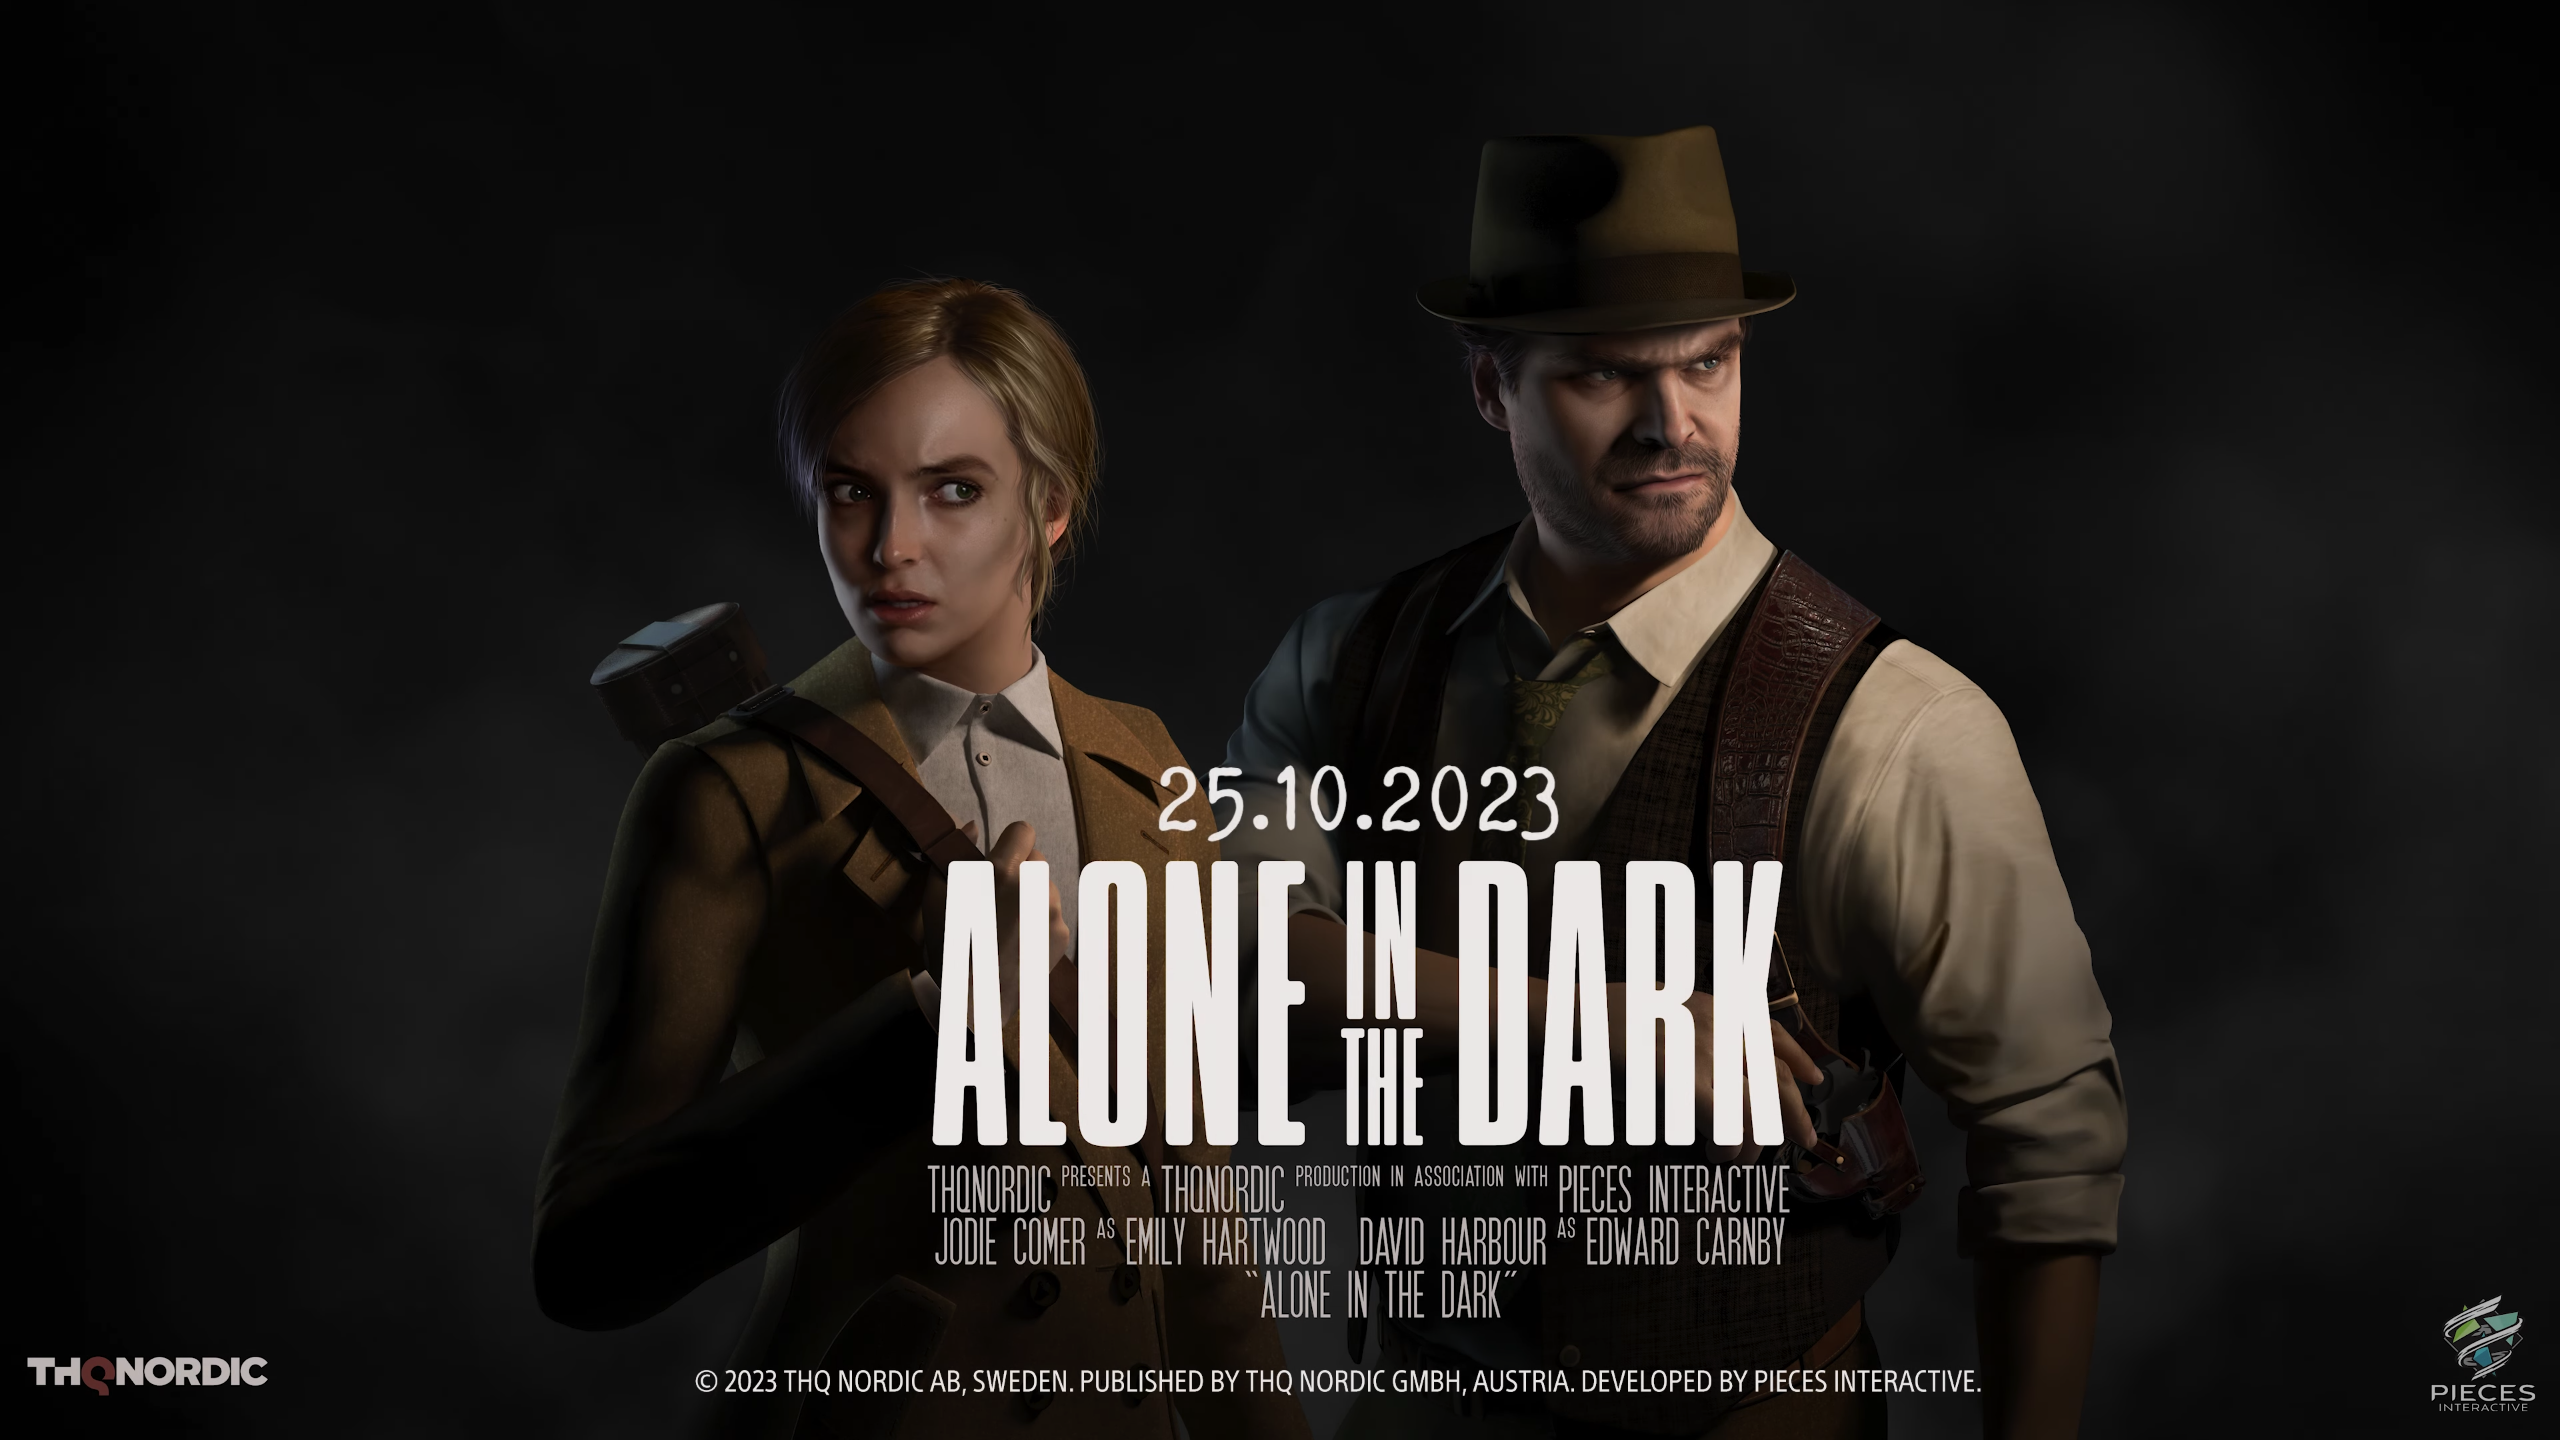 หลังจากที่ทาง THQ Nordic ได้ประกาศรีเมคเกม Survivor Horror ในตำนานอย่าง Alone in the Dark ไปเมื่อปีแล้ว ในตอนนี้ THQ Nordic ก็ได้ปล่อยเทรลเลอร์ของเกมนี้ในชื่อว่า Spotlight โดยภายในคลิปก็จะมีการแนะนำตัวเอก, บรรยากาศ และการสืบสวน ภายในเกมแบบคร่าว ๆ